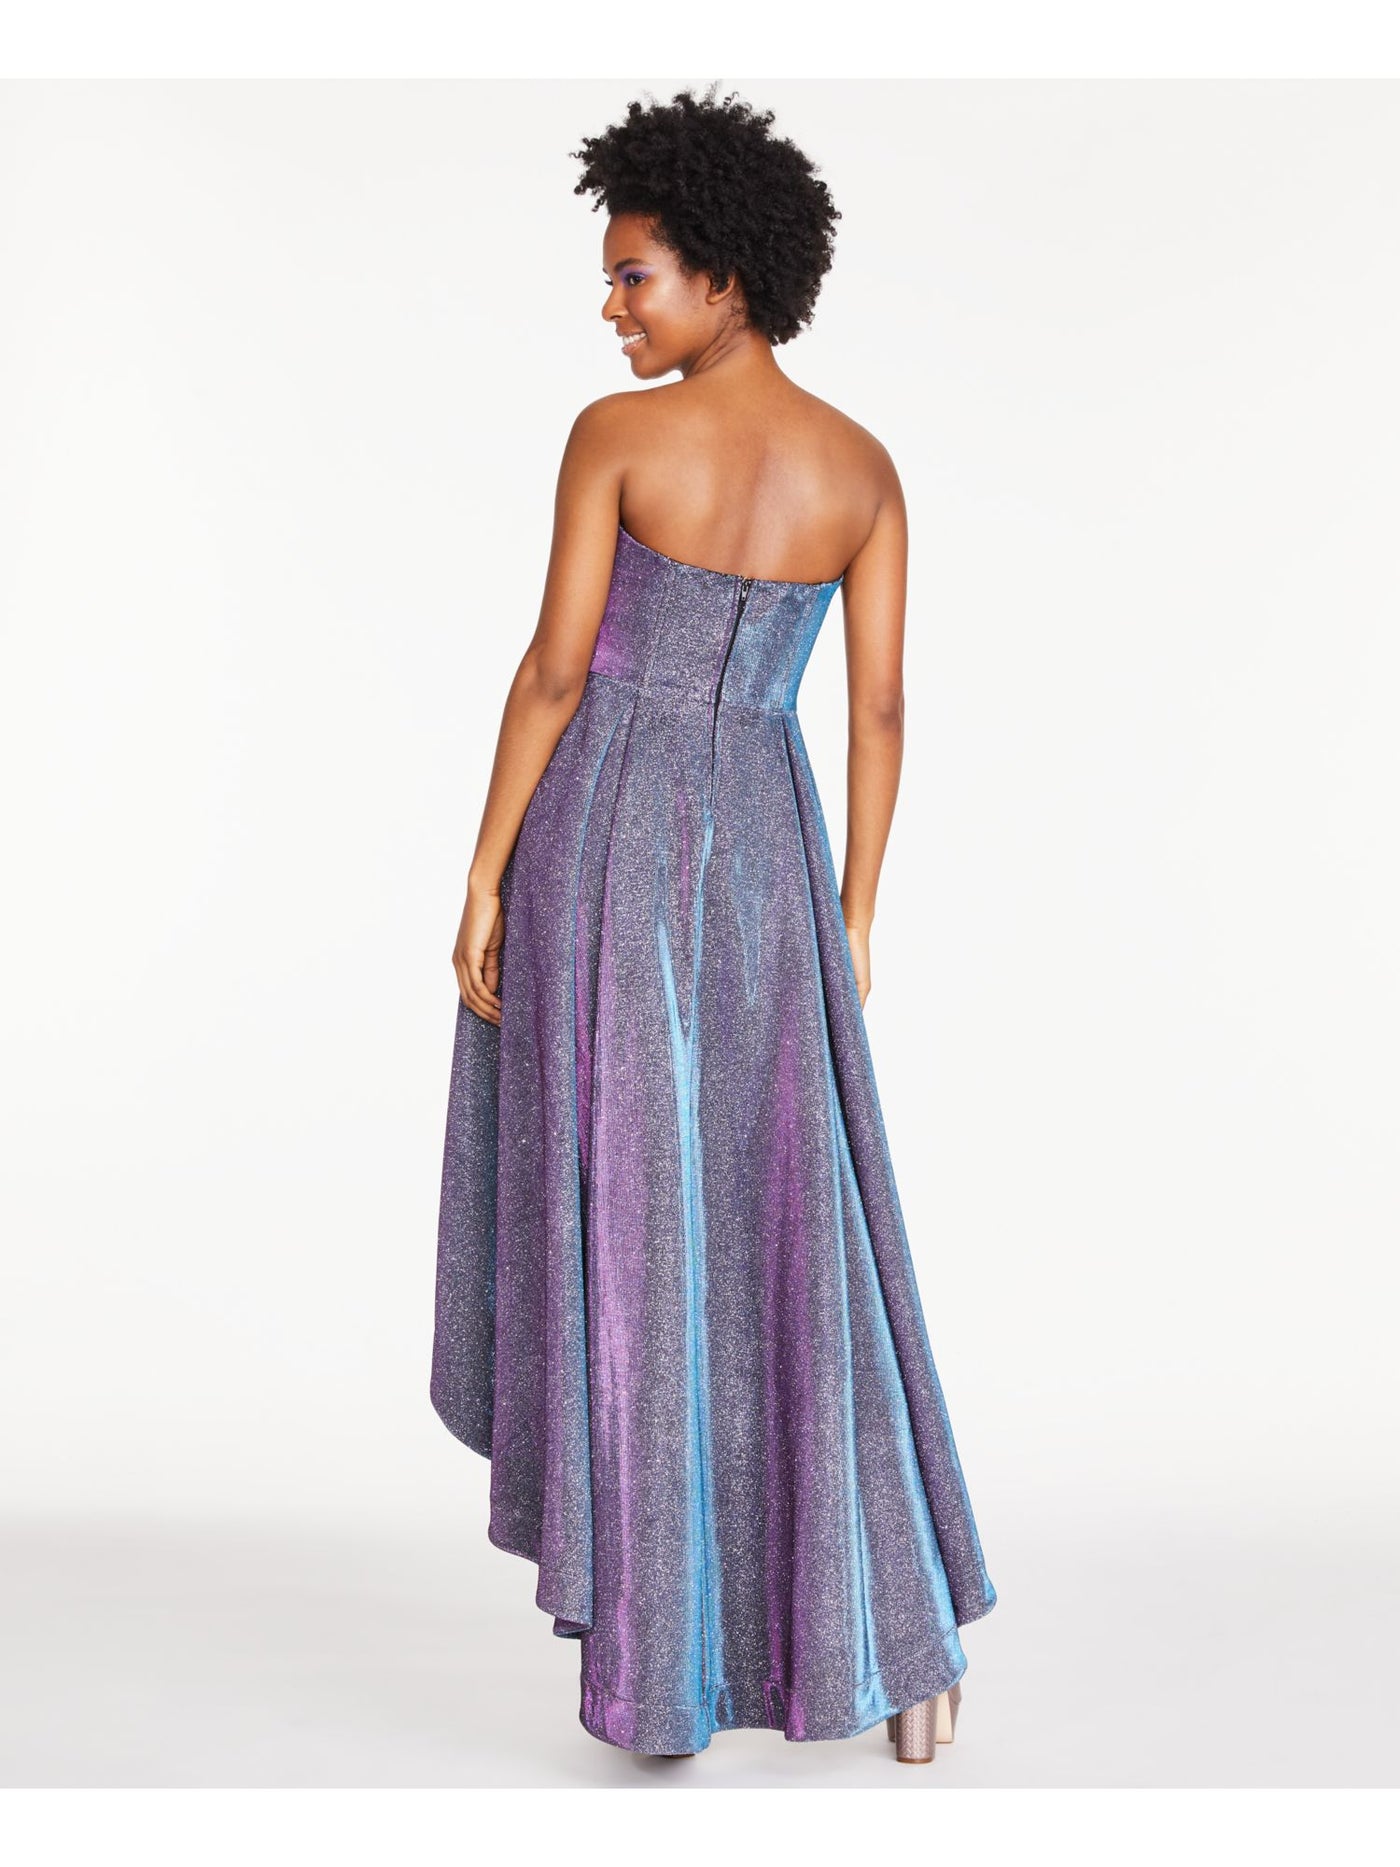 SPEECHLESS Womens Glitter Zippered Sleeveless Strapless Full-Length Prom Hi-Lo Dress